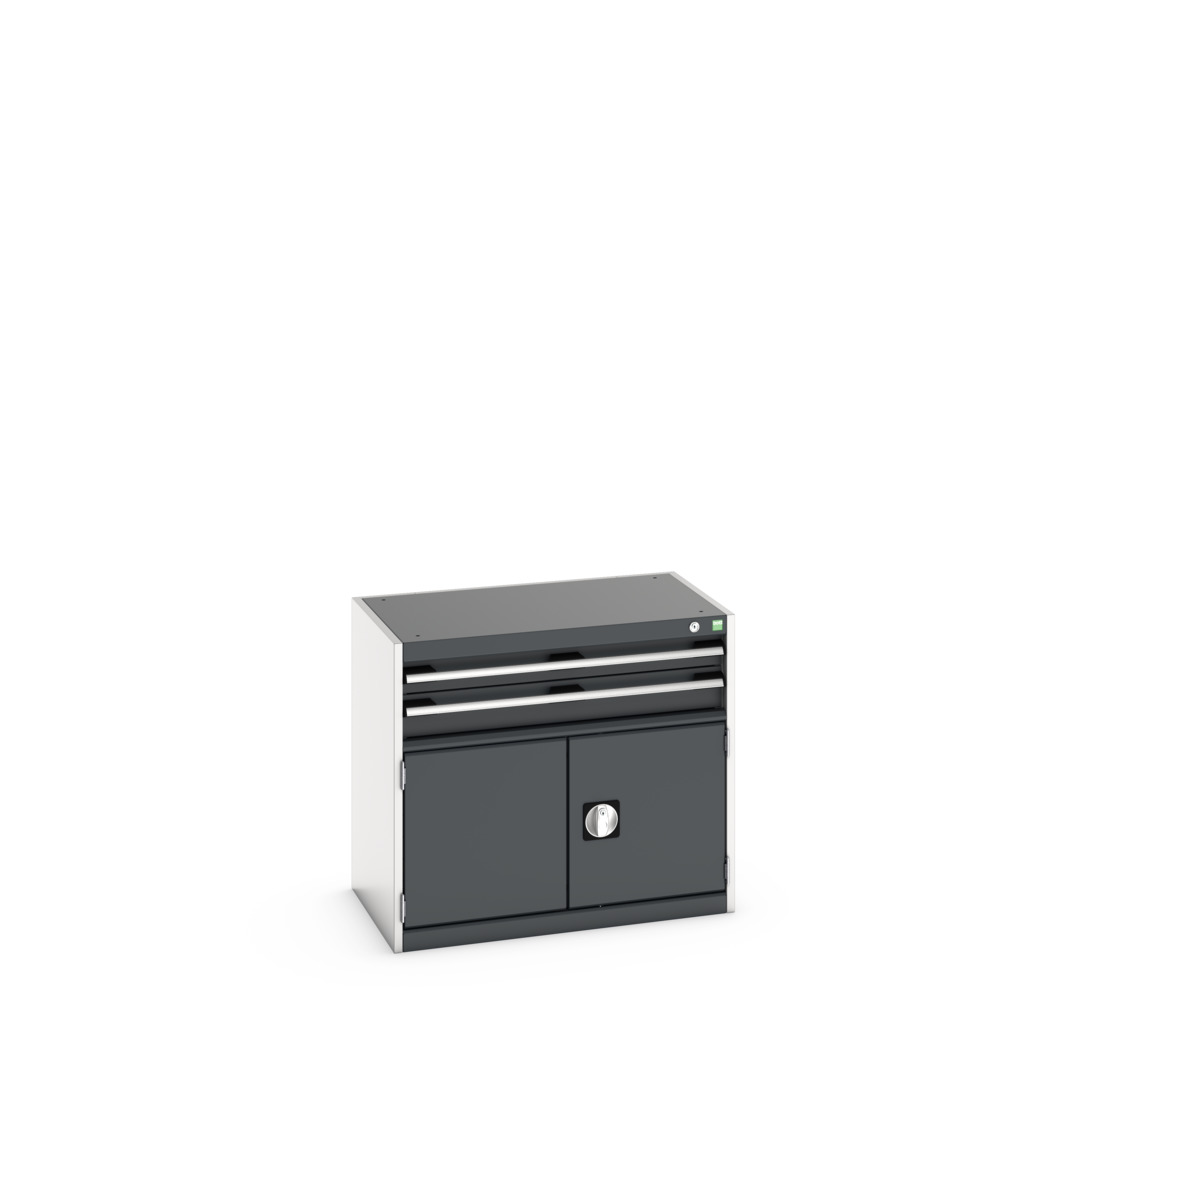 40012007. - cubio drawer-door cabinet